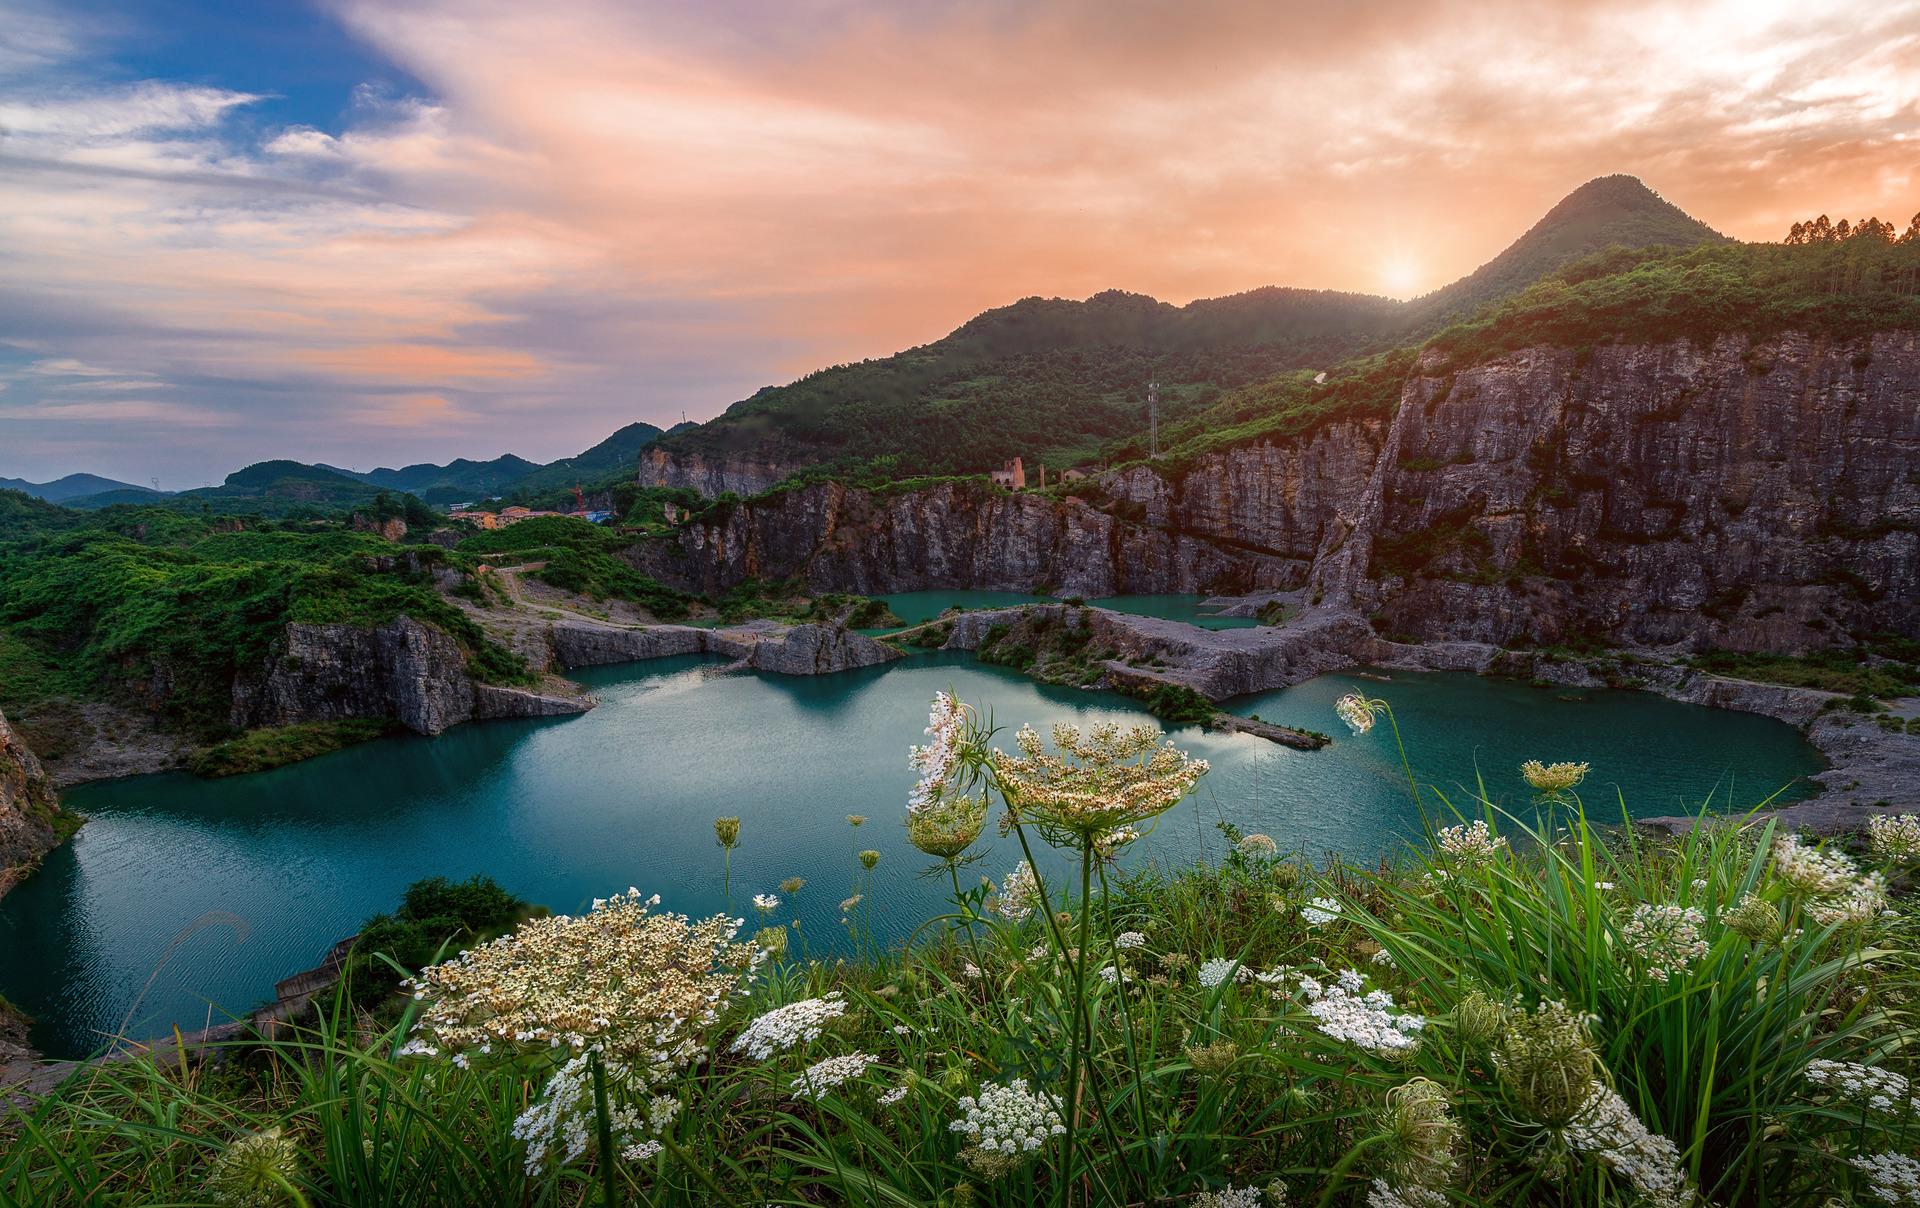 重庆渝北矿山公园,一个即将惊艳世人的西南美景,这里惊艳你了吗